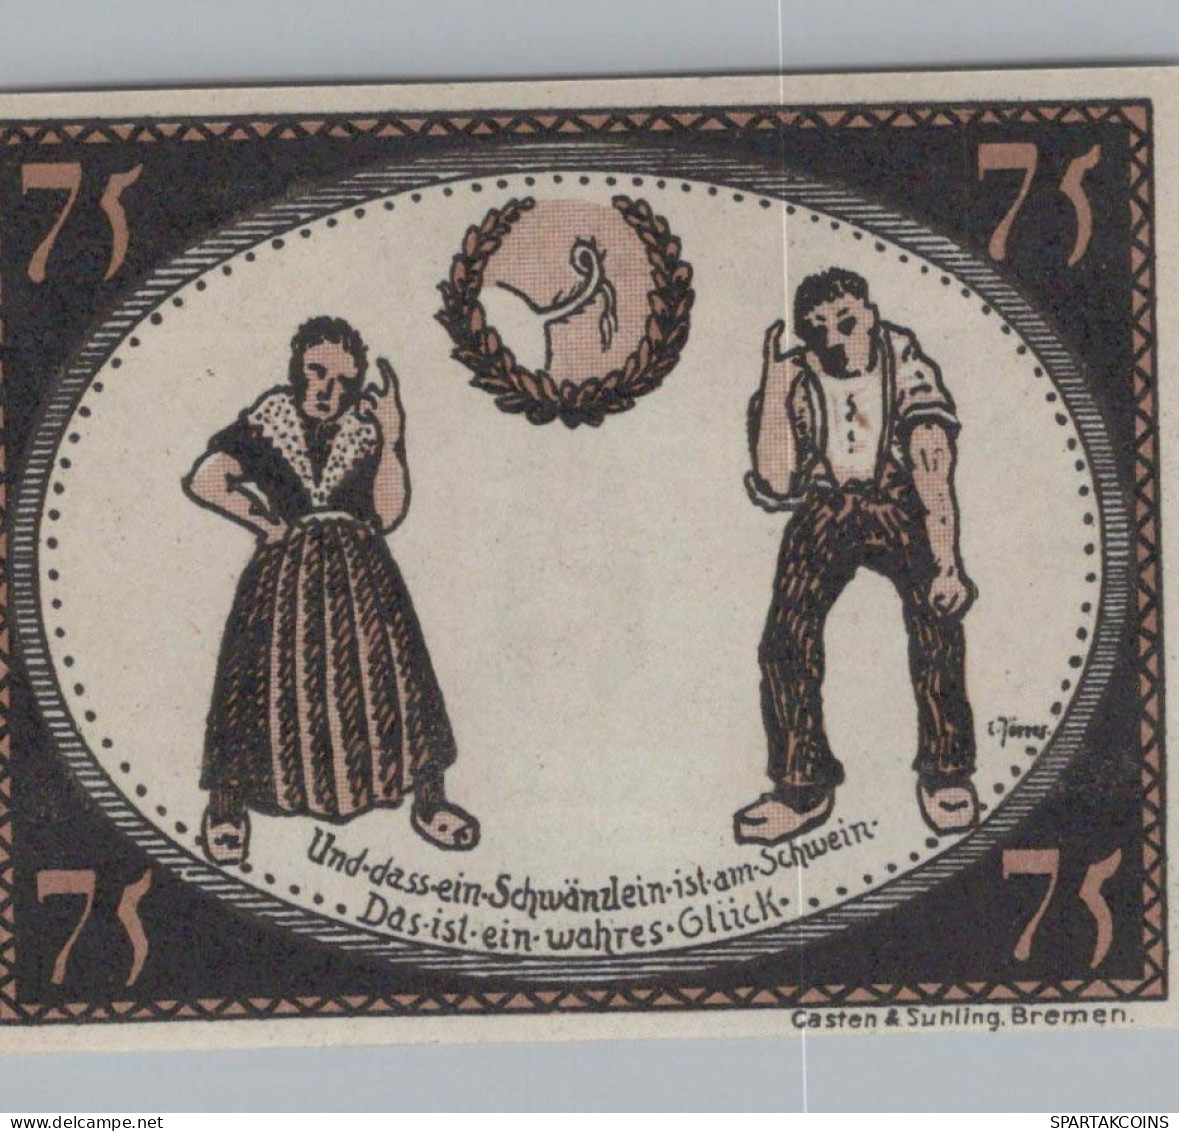 75 PFENNIG 1921 Stadt DIEPHOLZ Hanover UNC DEUTSCHLAND Notgeld Banknote #PA460 - Lokale Ausgaben